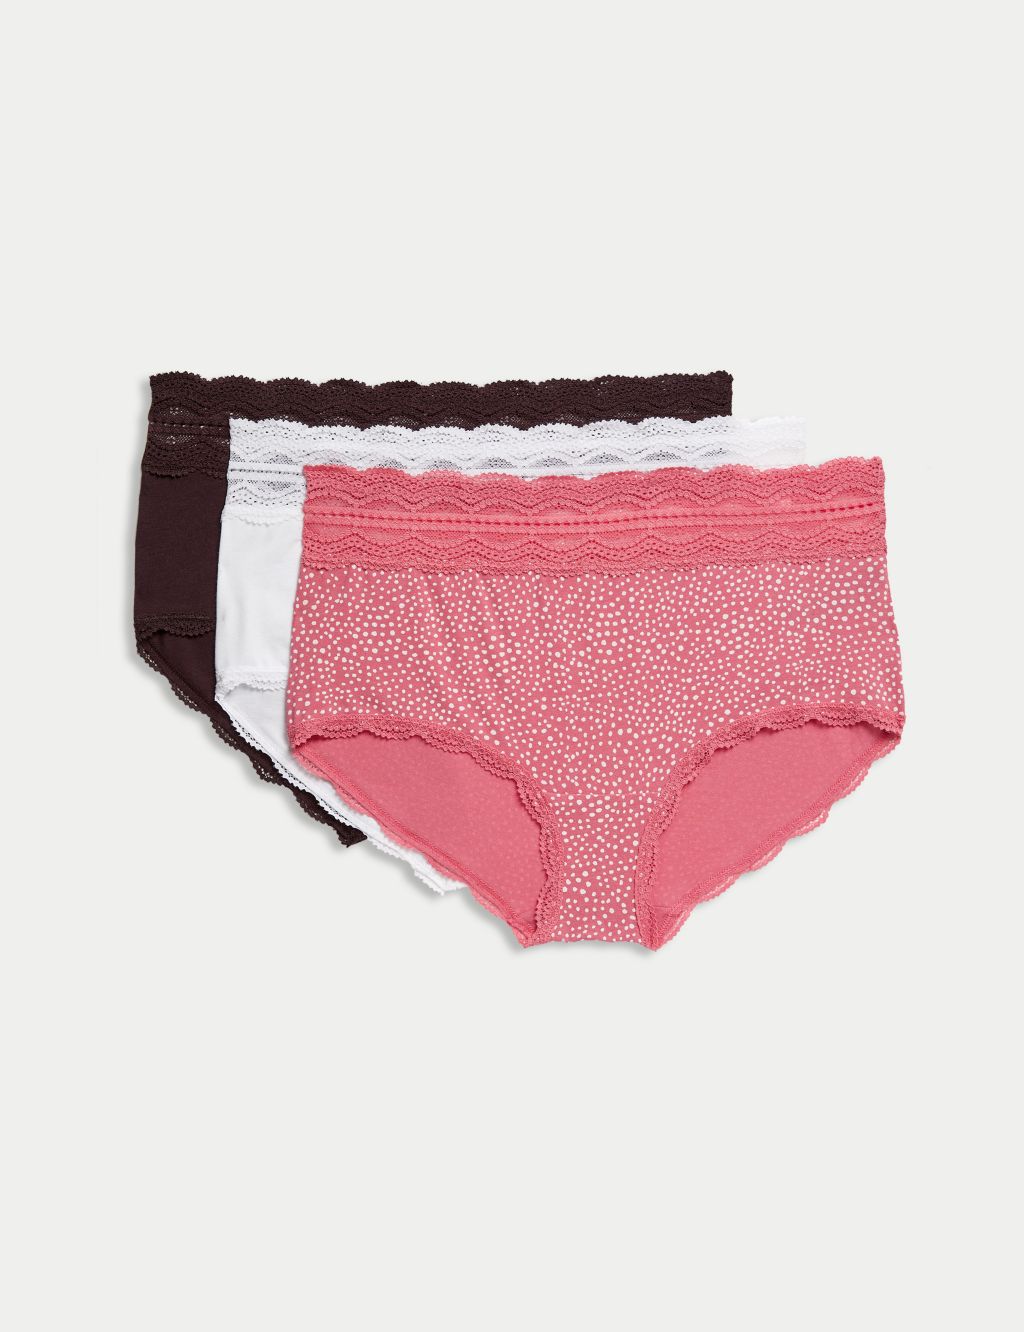 OUMSHBI Knickers For Women Cotton Womens Underwear Soft Cotton